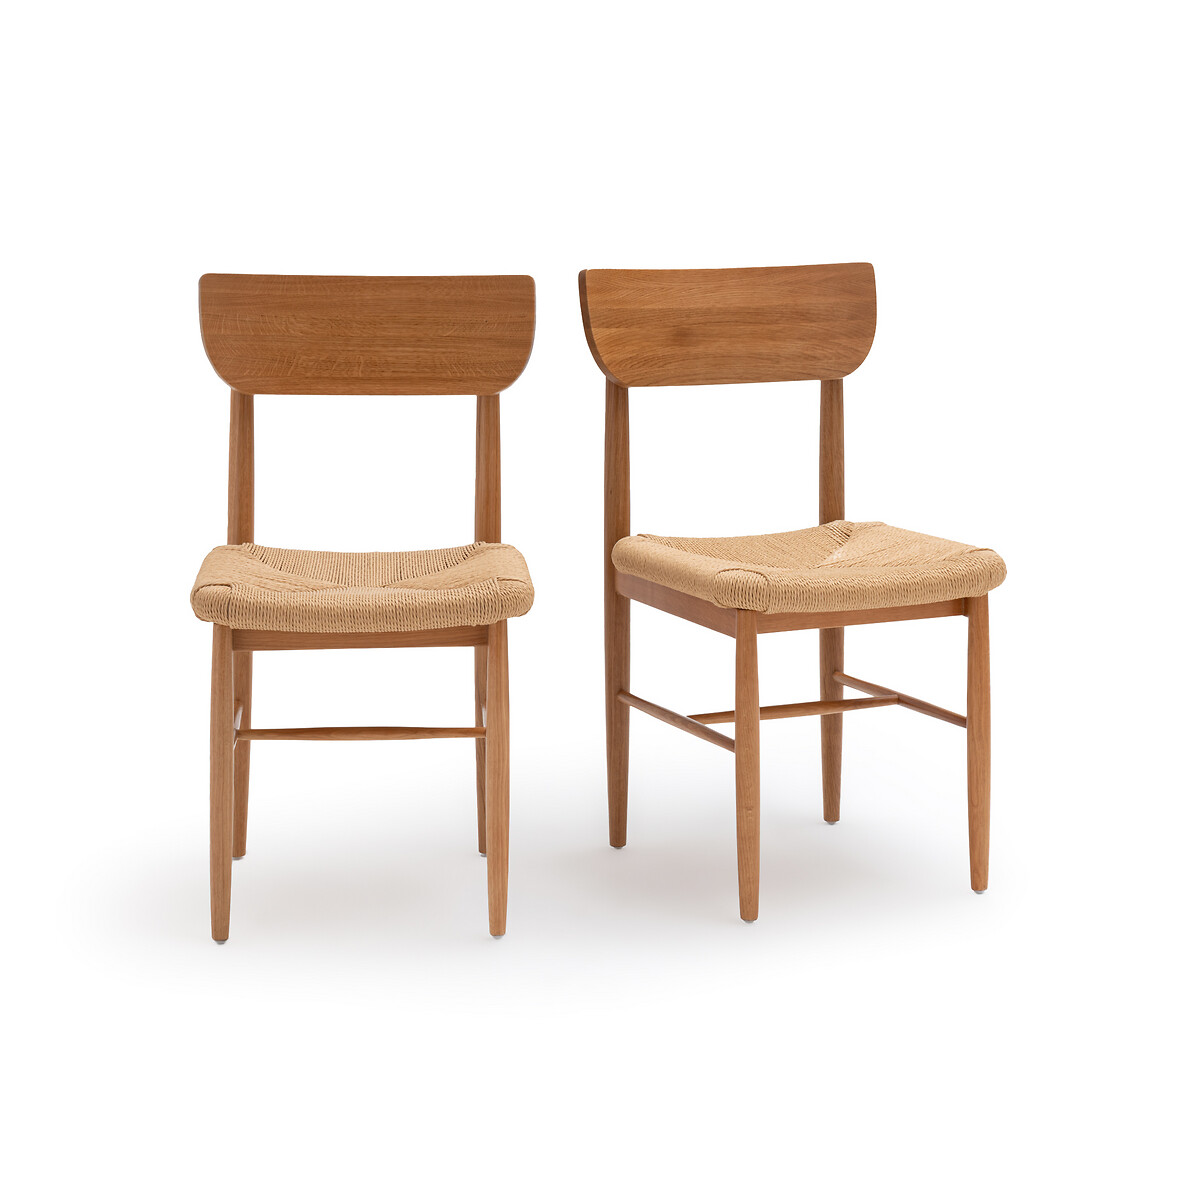 Комплект из 2 стульев из Массива дуба и плетения Andre единый размер каштановый